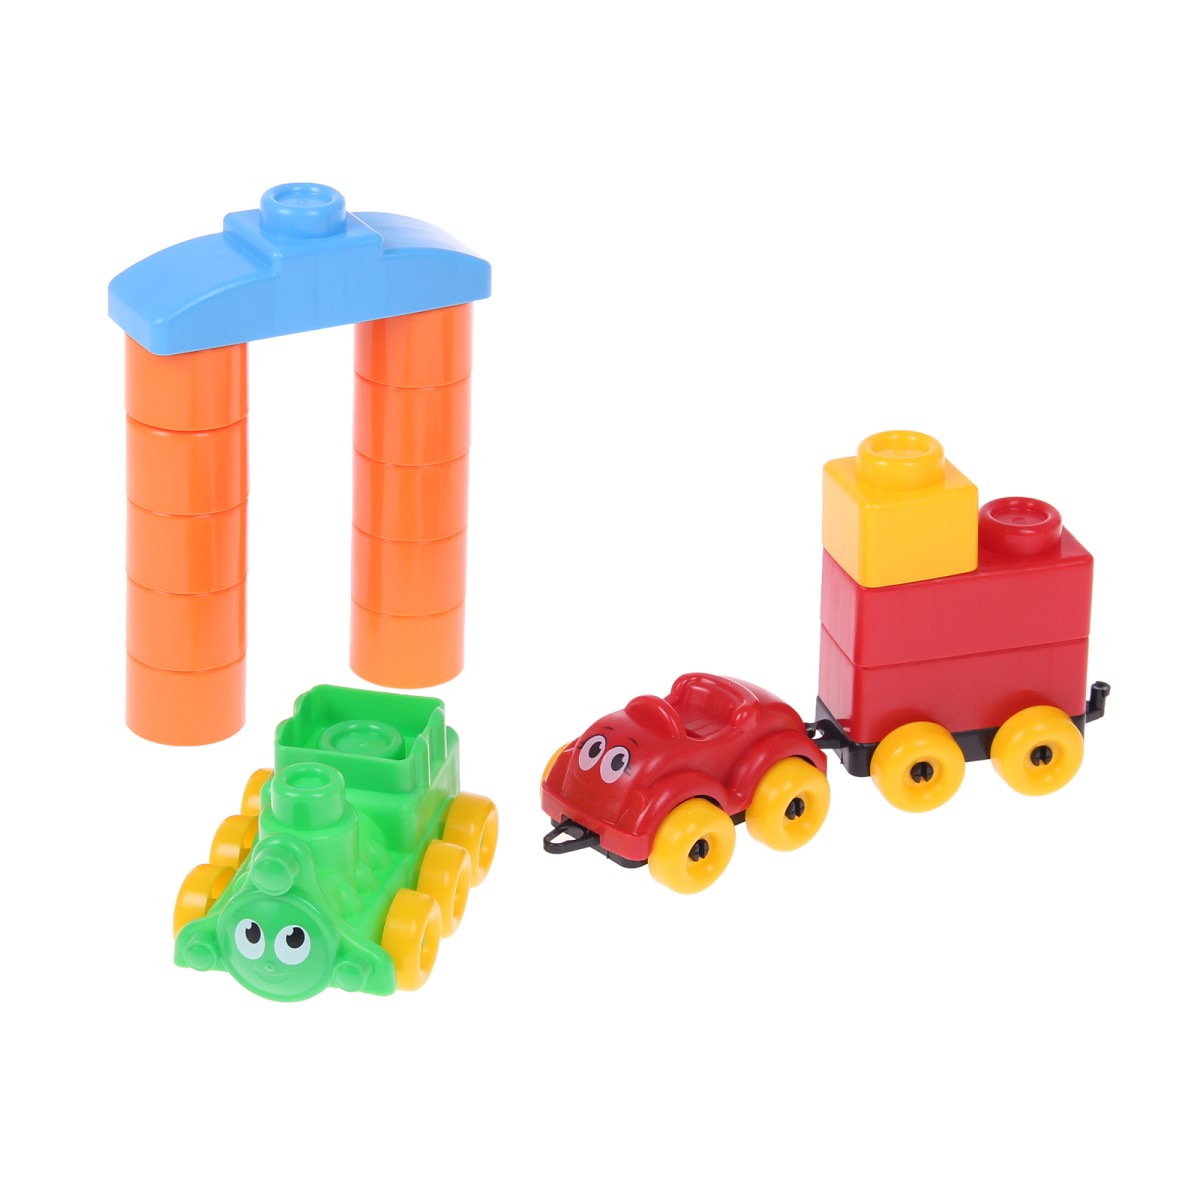 Развивающие игрушки БИПЛАНТ для малышей конструктор Кноп-Кнопыч 46 деталей + Сортер кубик малый + Команда КВА - фото 7